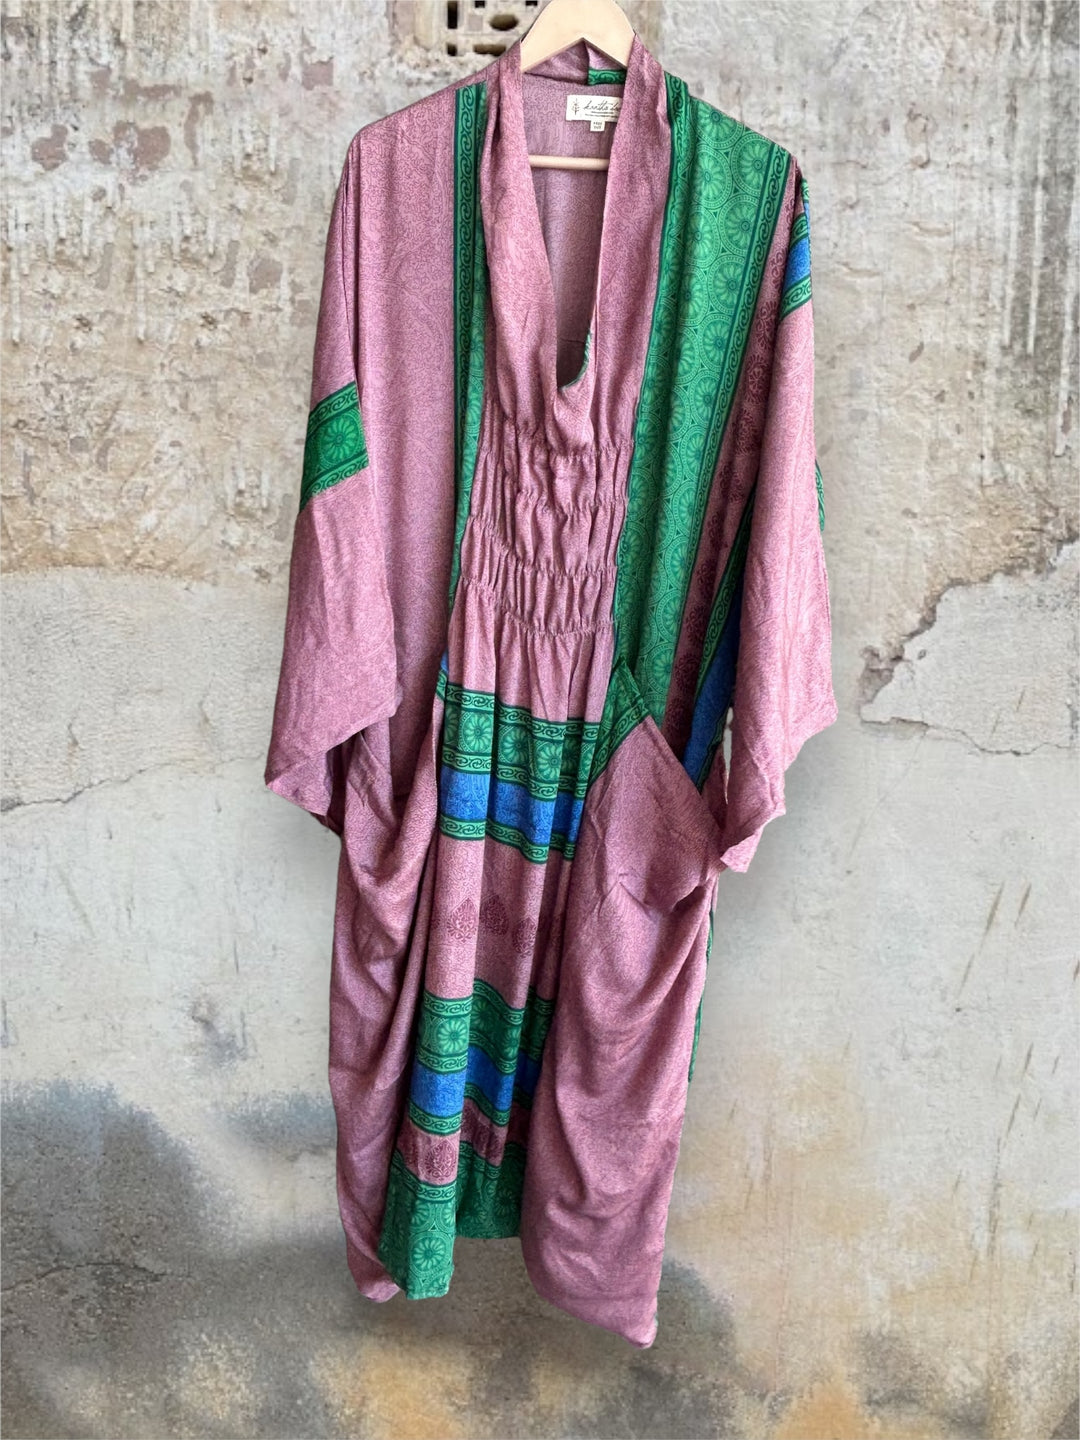 Ruched Dress 0424 158 - Kantha Bae